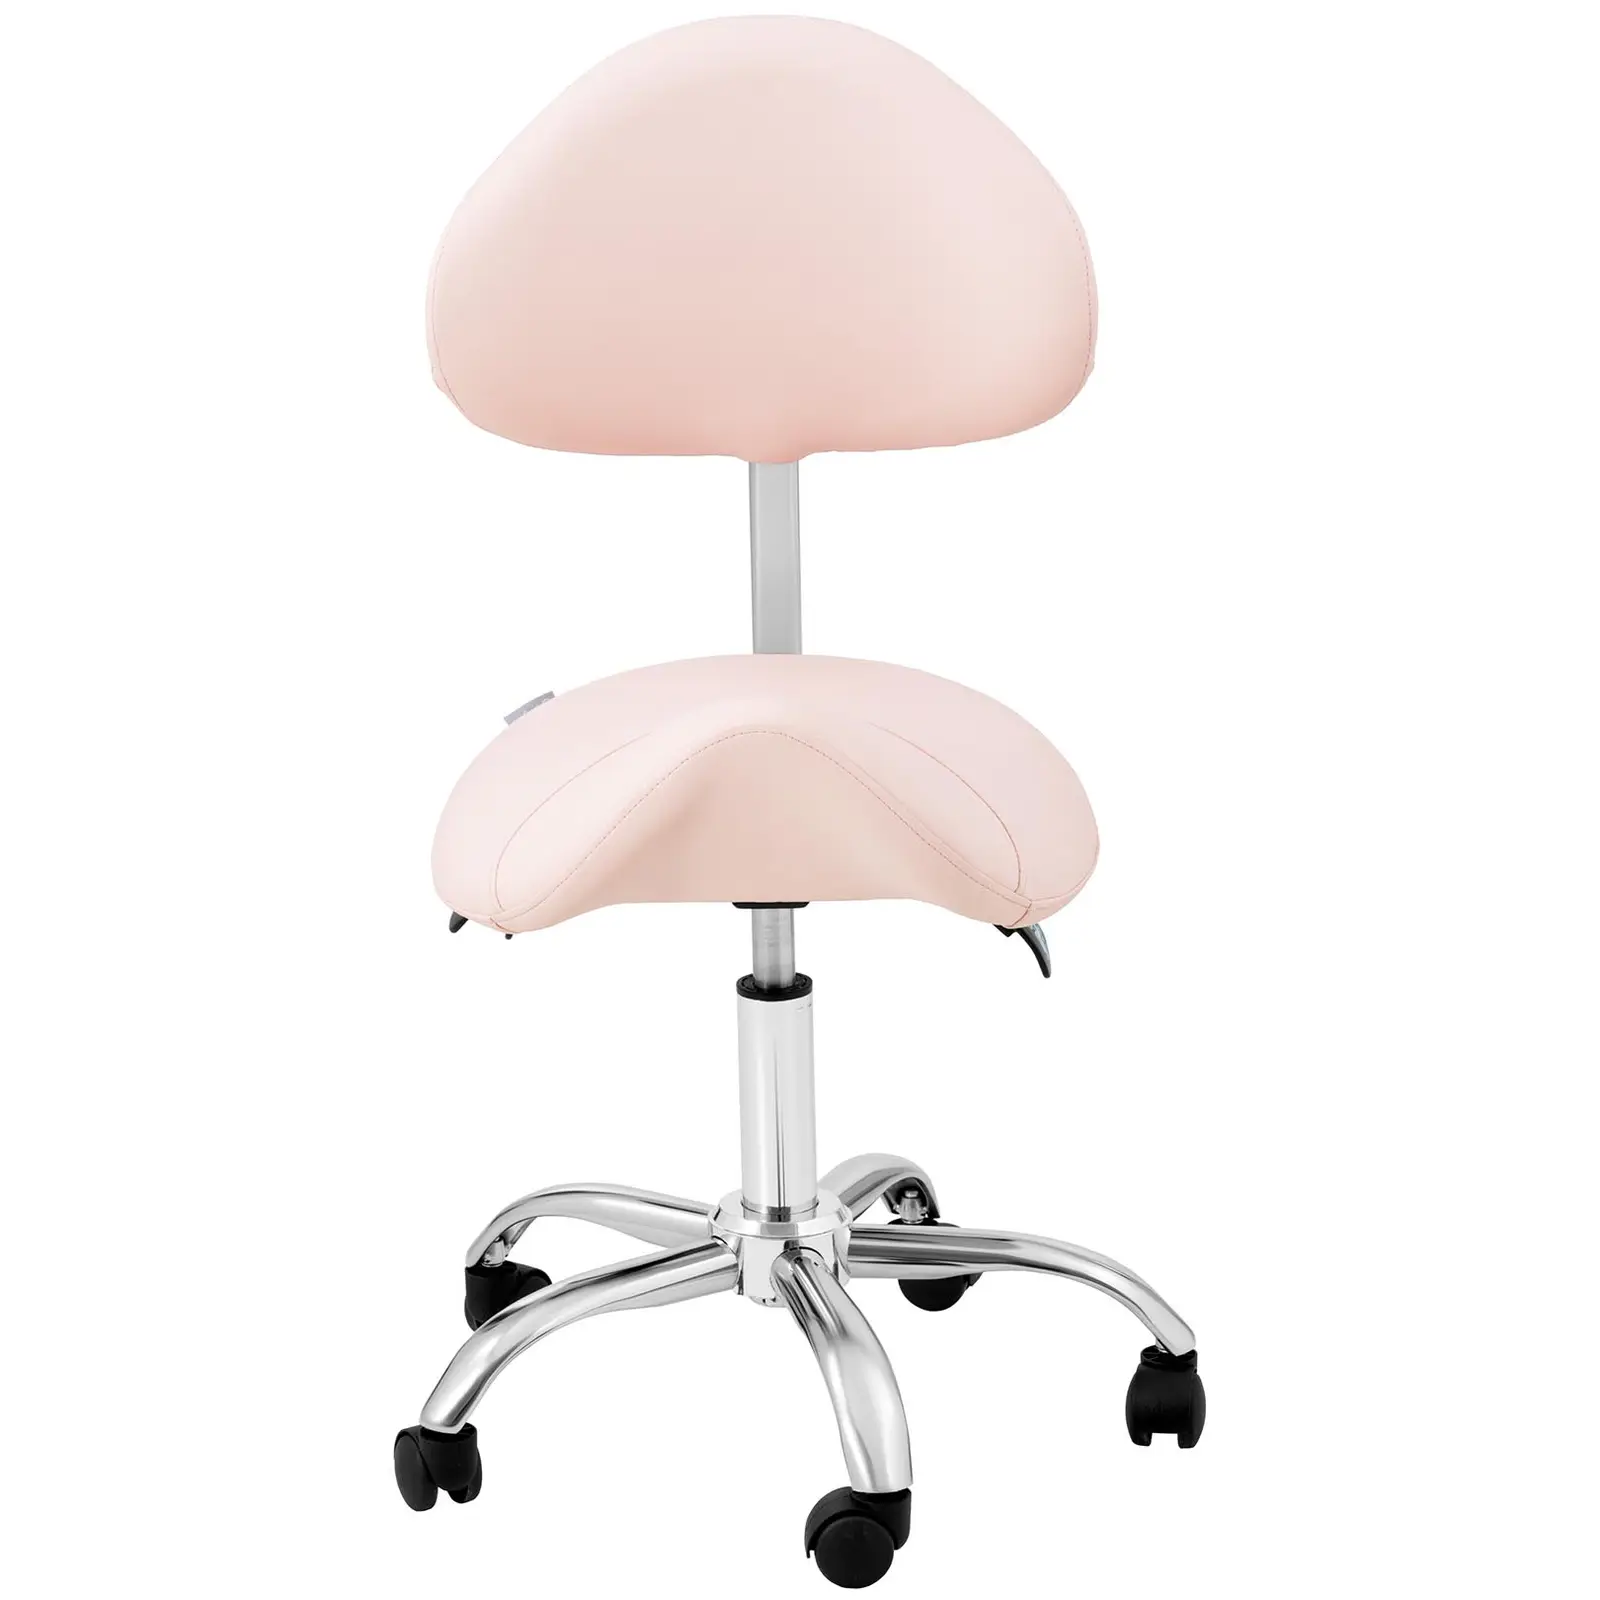 Krzesło siodłowe - oparcie i siedzisko z regulacją wysokości - 55-69 cm - 150 kg - Różowy, Srebrny